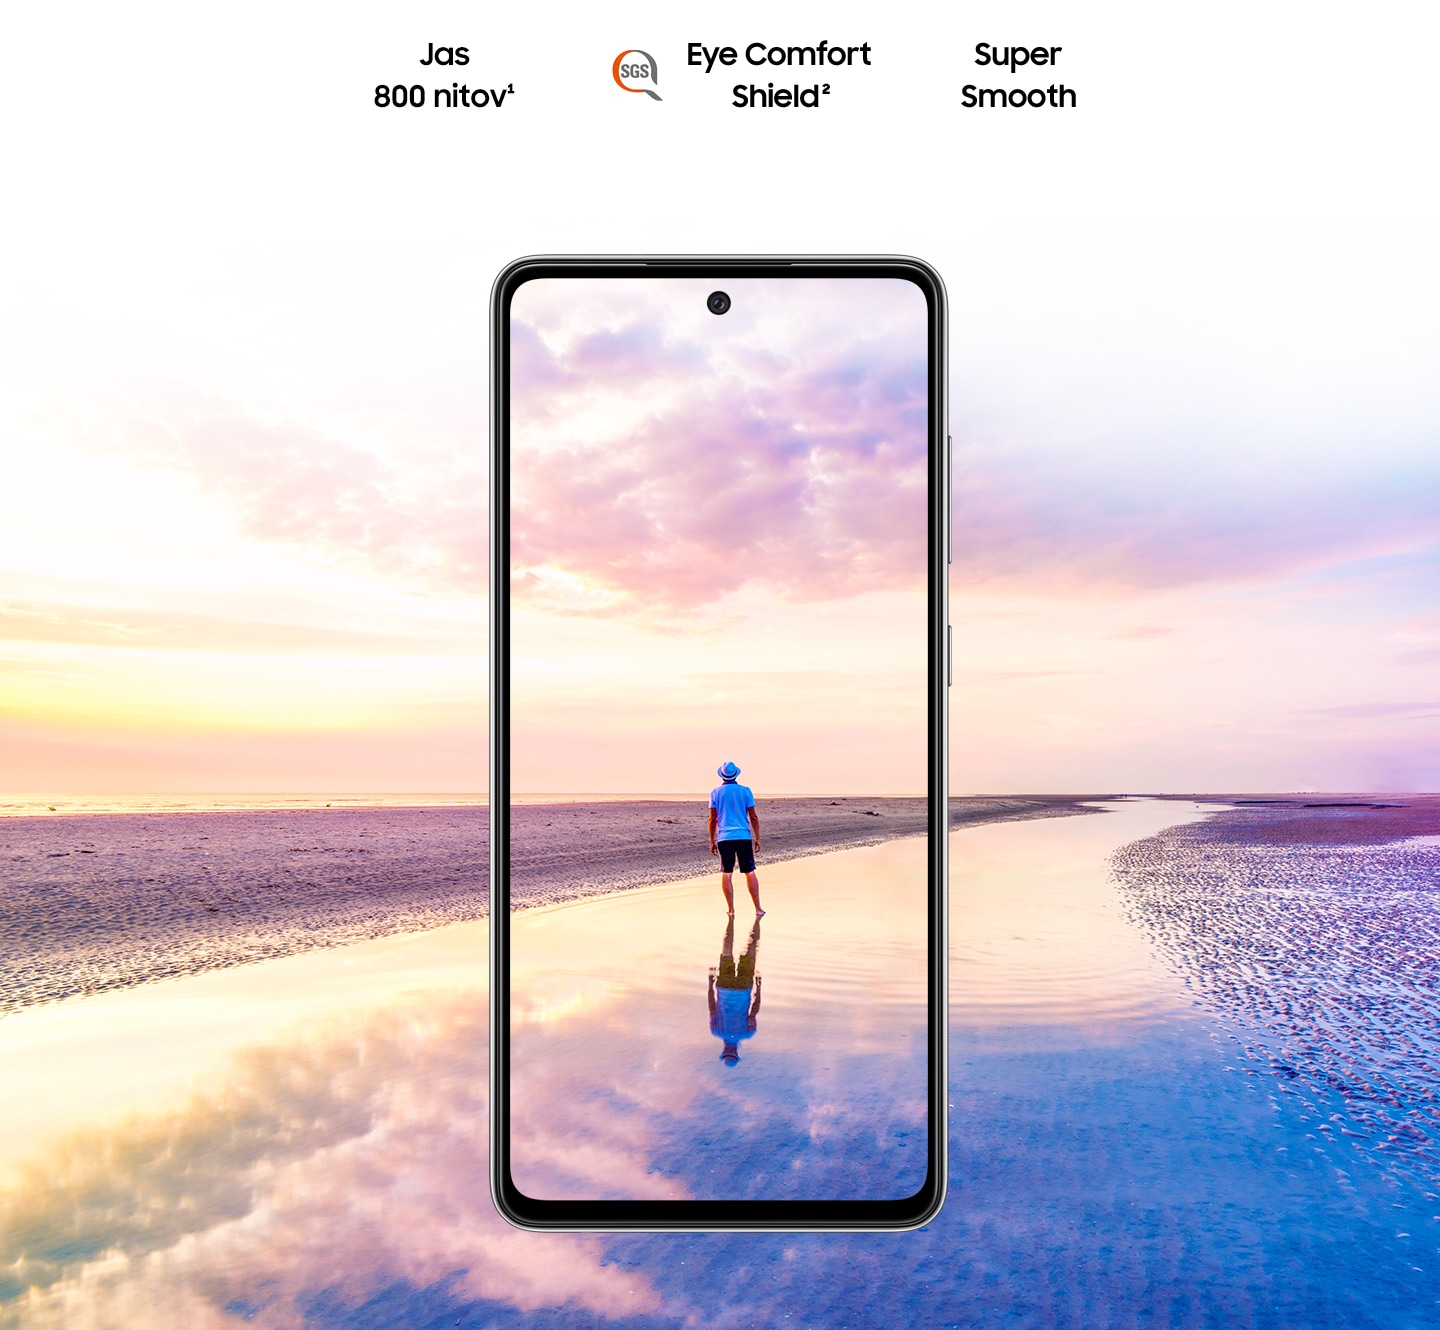 Galaxy A52 pri pohľade spredu. Vyobrazený muž stojaci na pláži pri západe slnka, obloha v ružovej a modrej farbe sa rozpína ​​aj mimo hraníc displeja. Nápis Jas 800 nitov, Eye Comfort Shield s logom SGS a Real Smooth.